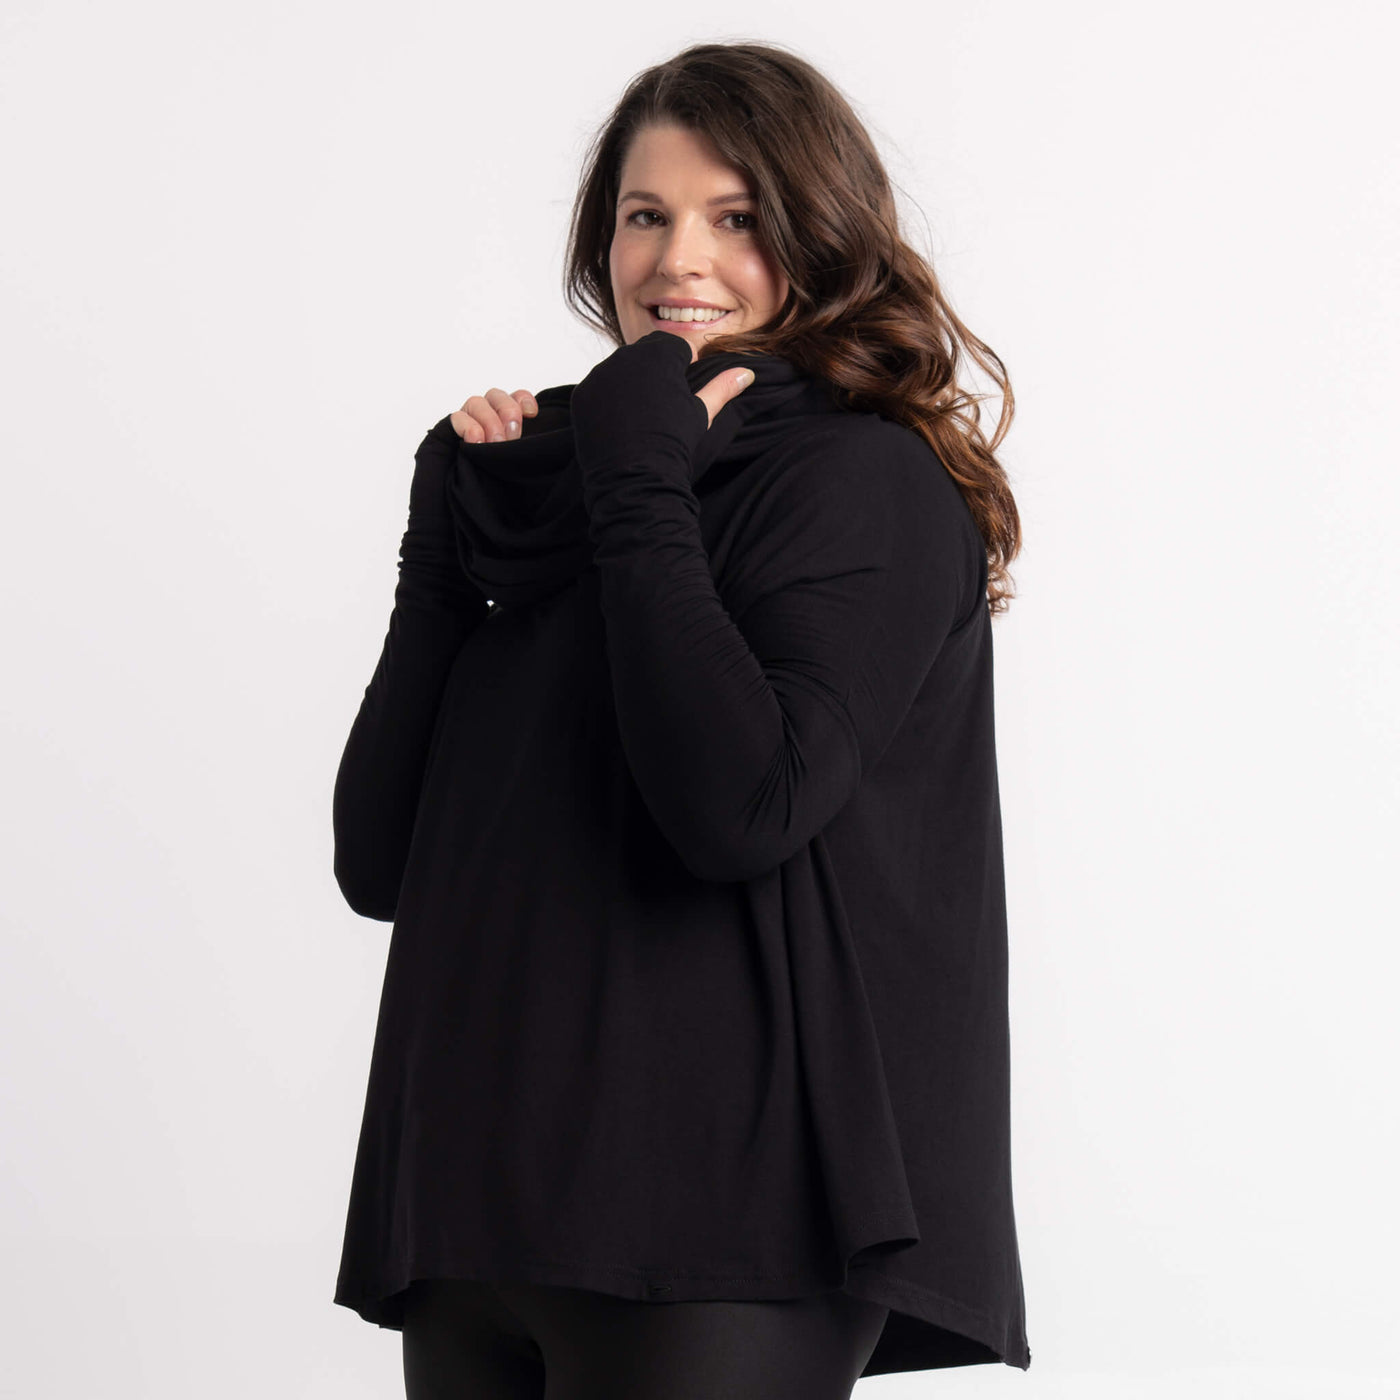 Cap à capuche noir, legging Angelina: des créations Québécoises signées KSL!